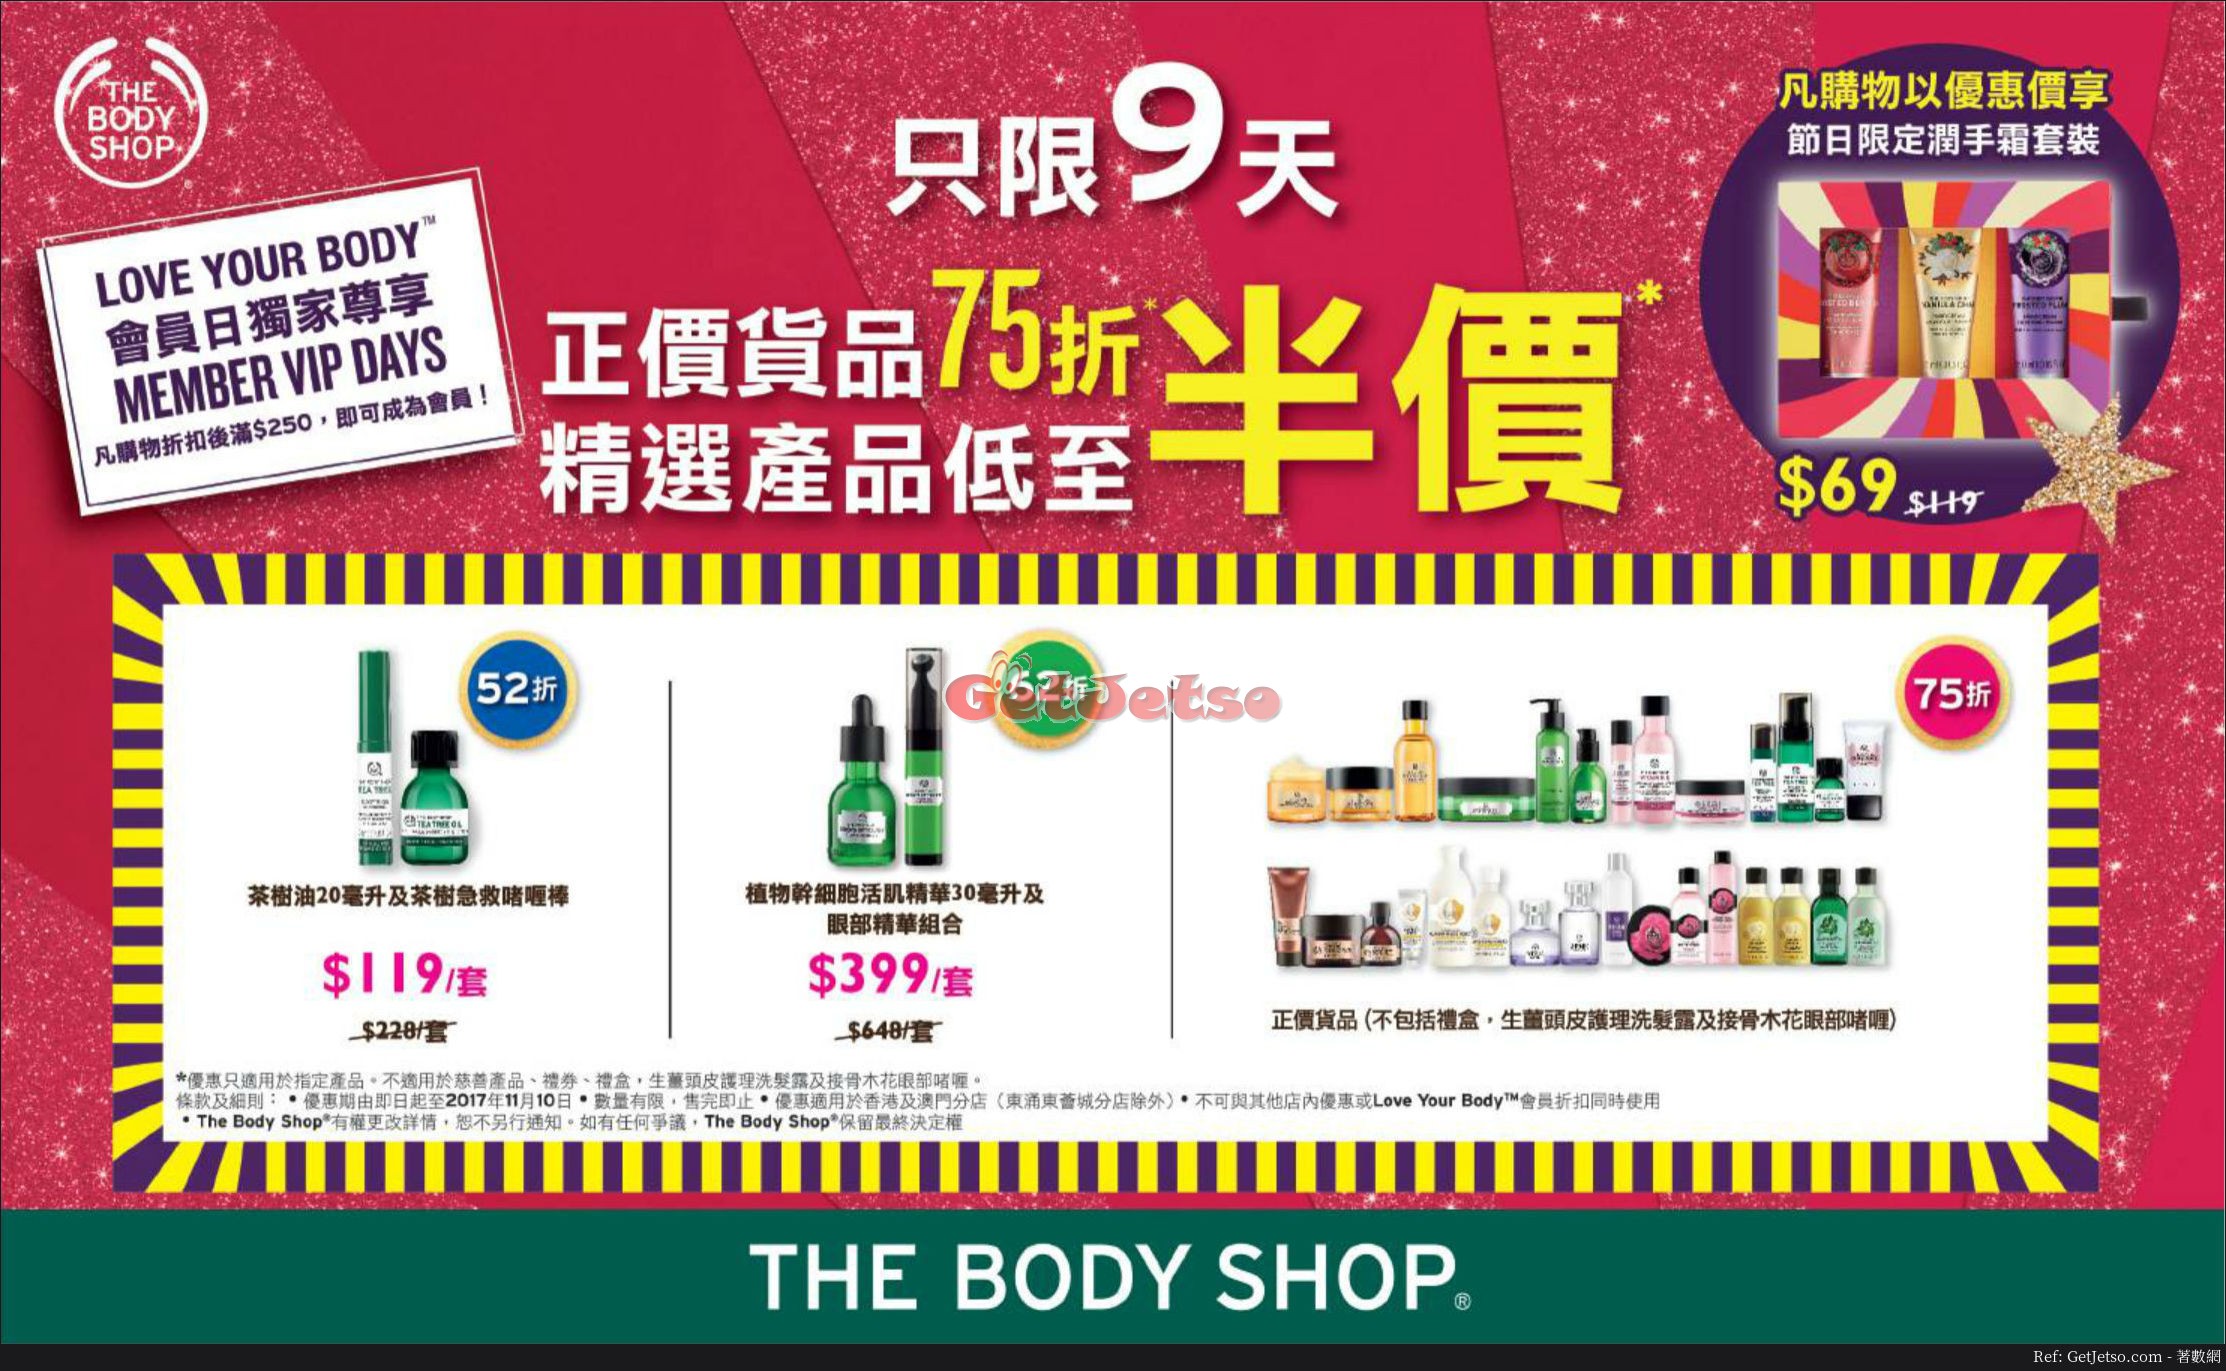 The Body Shop 精選產品低至半價優惠(至17年11月10日)圖片1